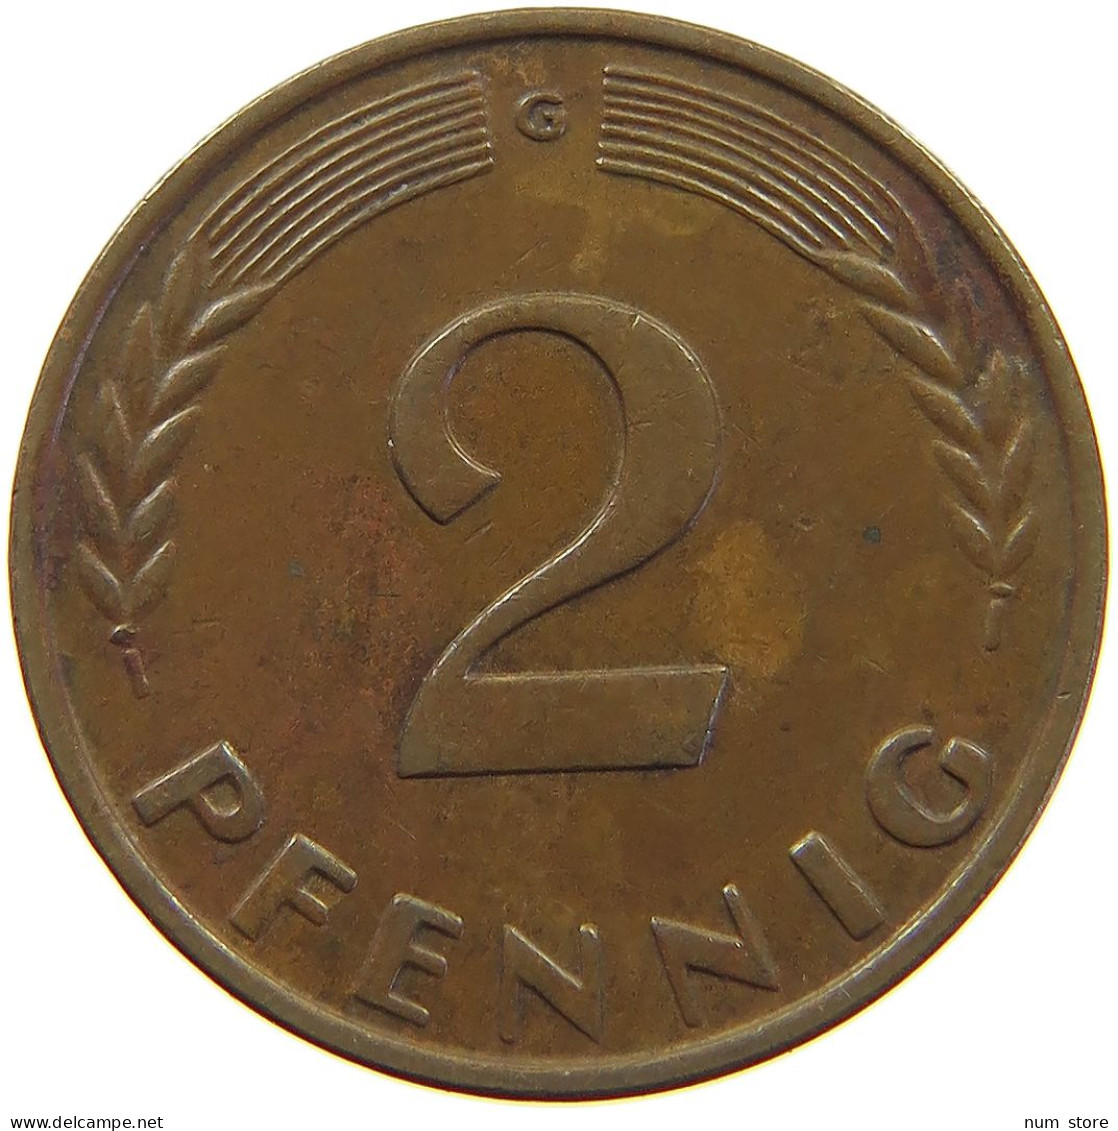 GERMANY WEST 2 PFENNIG 1950 G #a063 0323 - 2 Pfennig